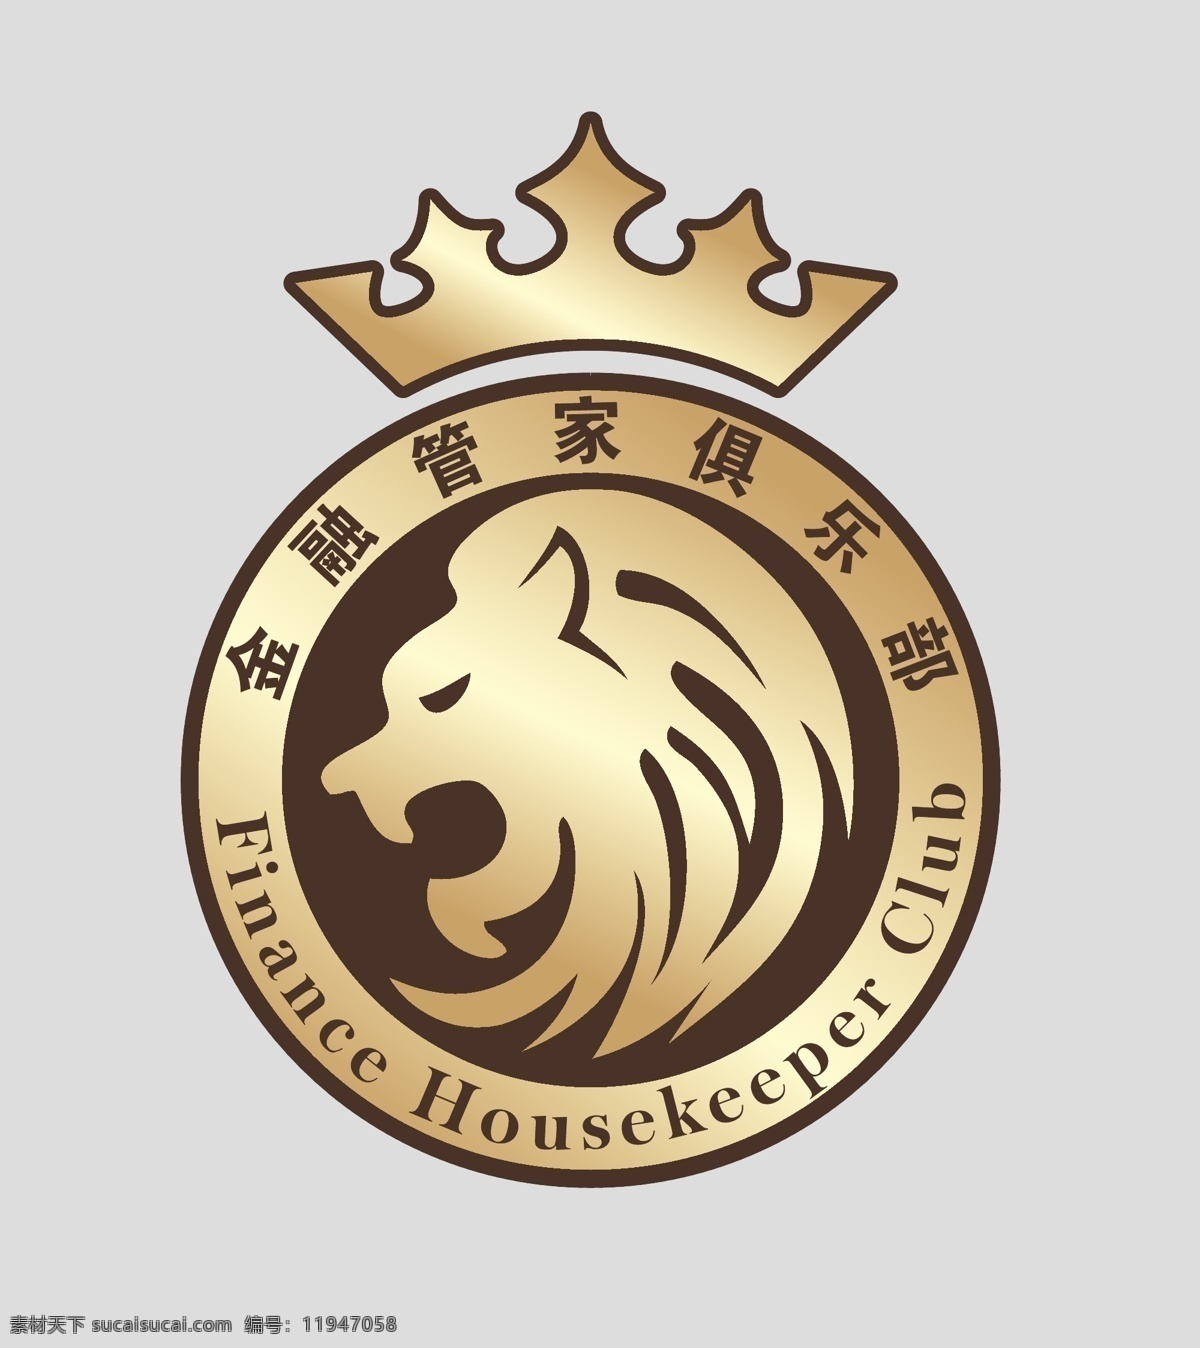 金融 俱乐部 logo 狮子 管家 王冠 简笔 圆形logo 小图标 标识标志图标 矢量